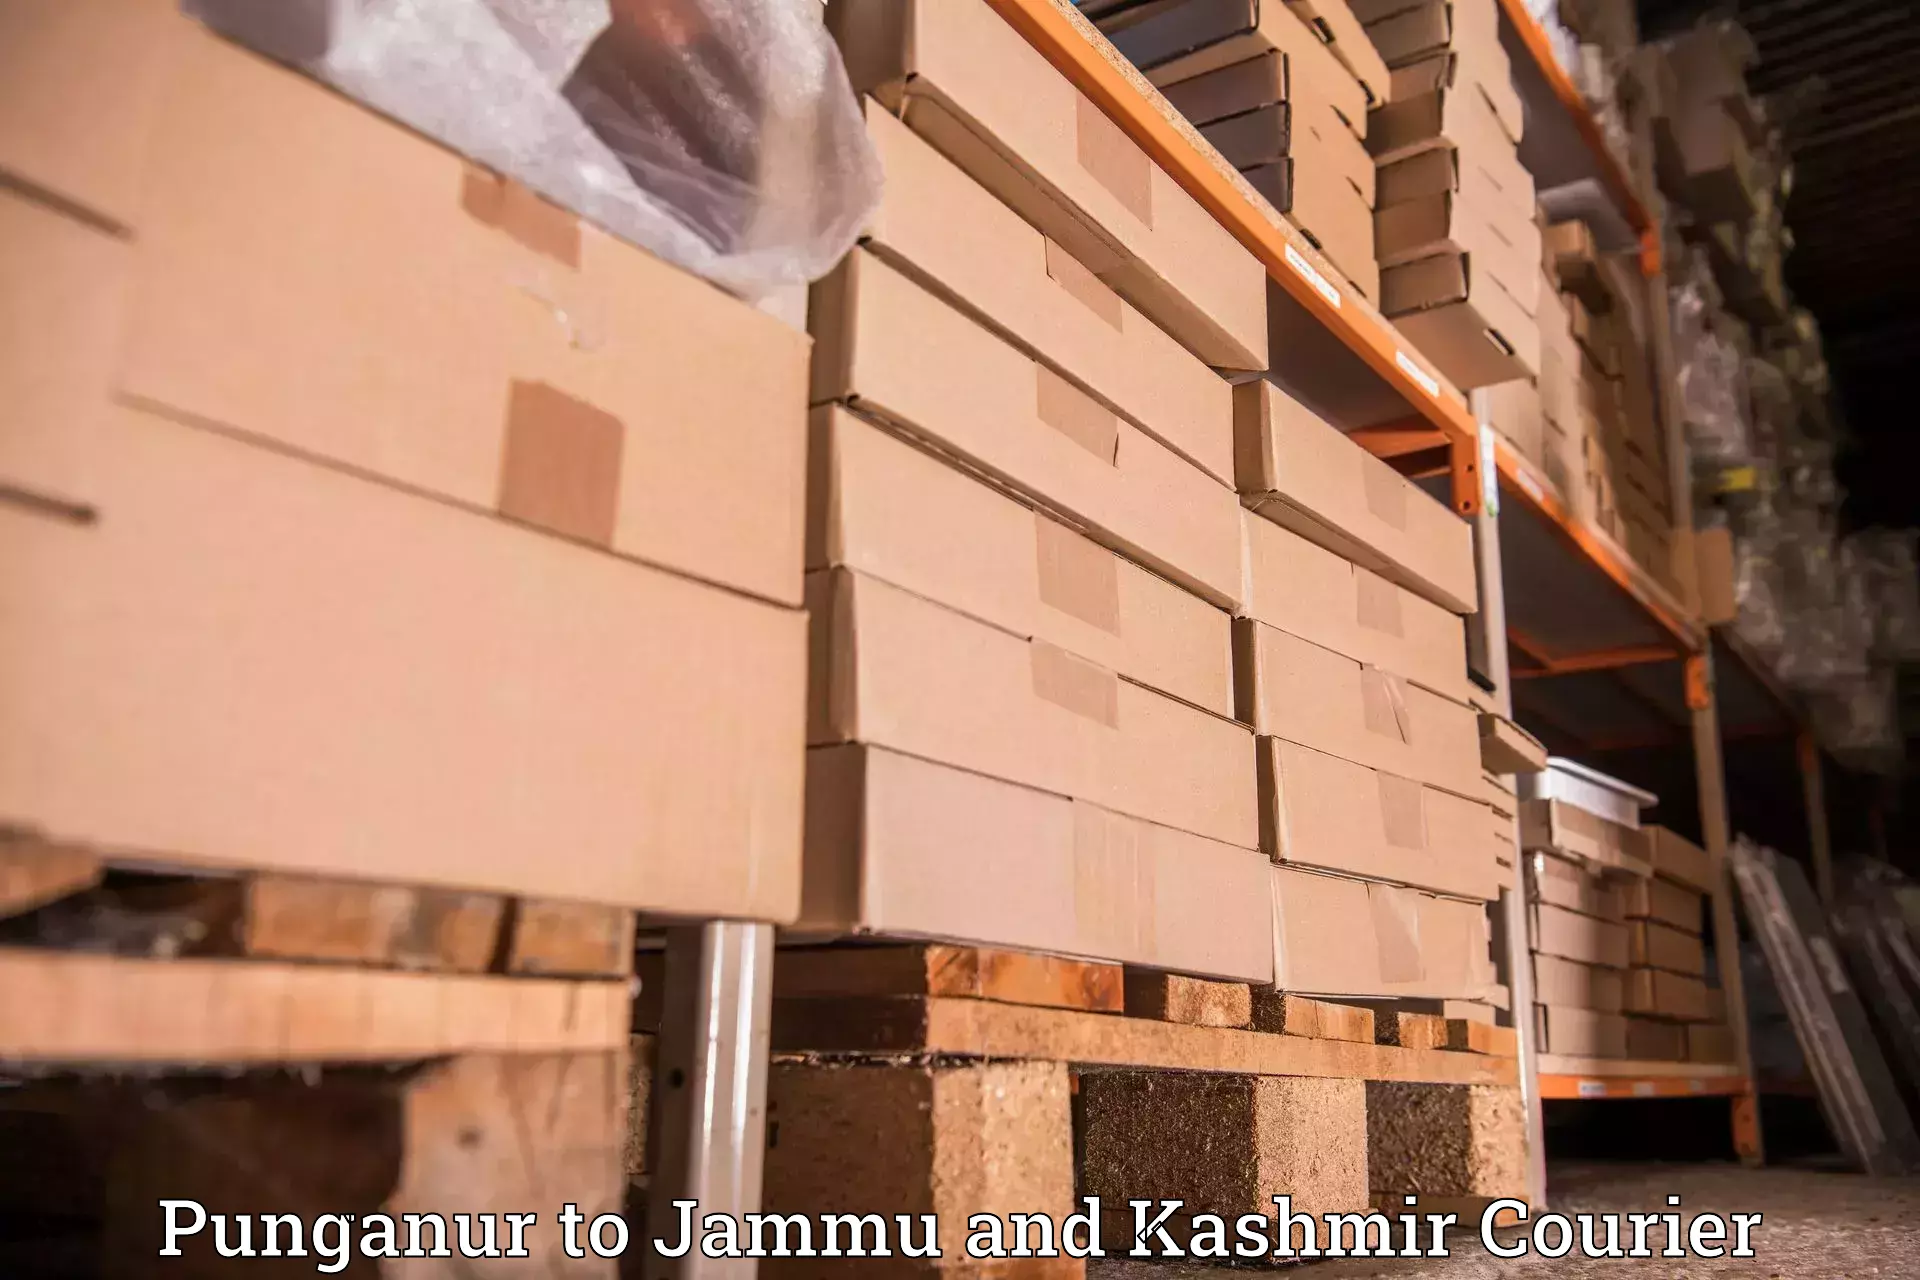 Courier service efficiency Punganur to Kishtwar